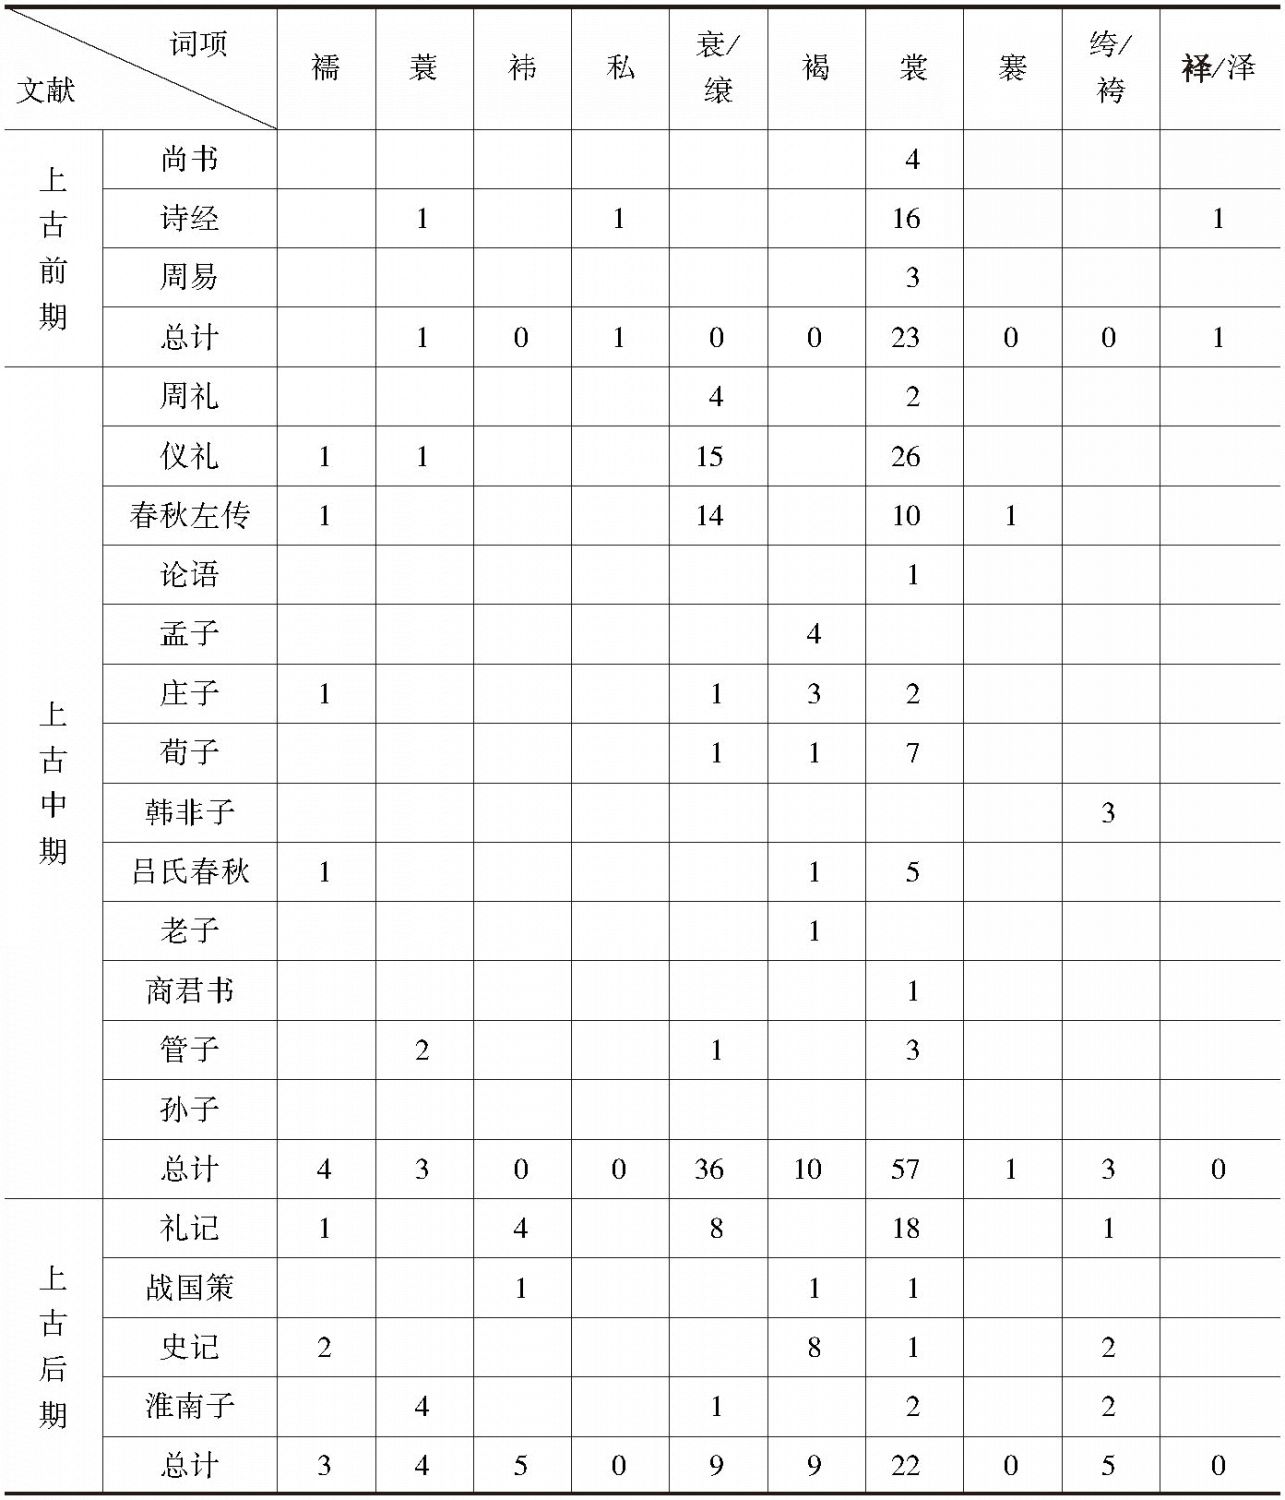 表2-2 单音节衣裳类名物词词频统计表（2）